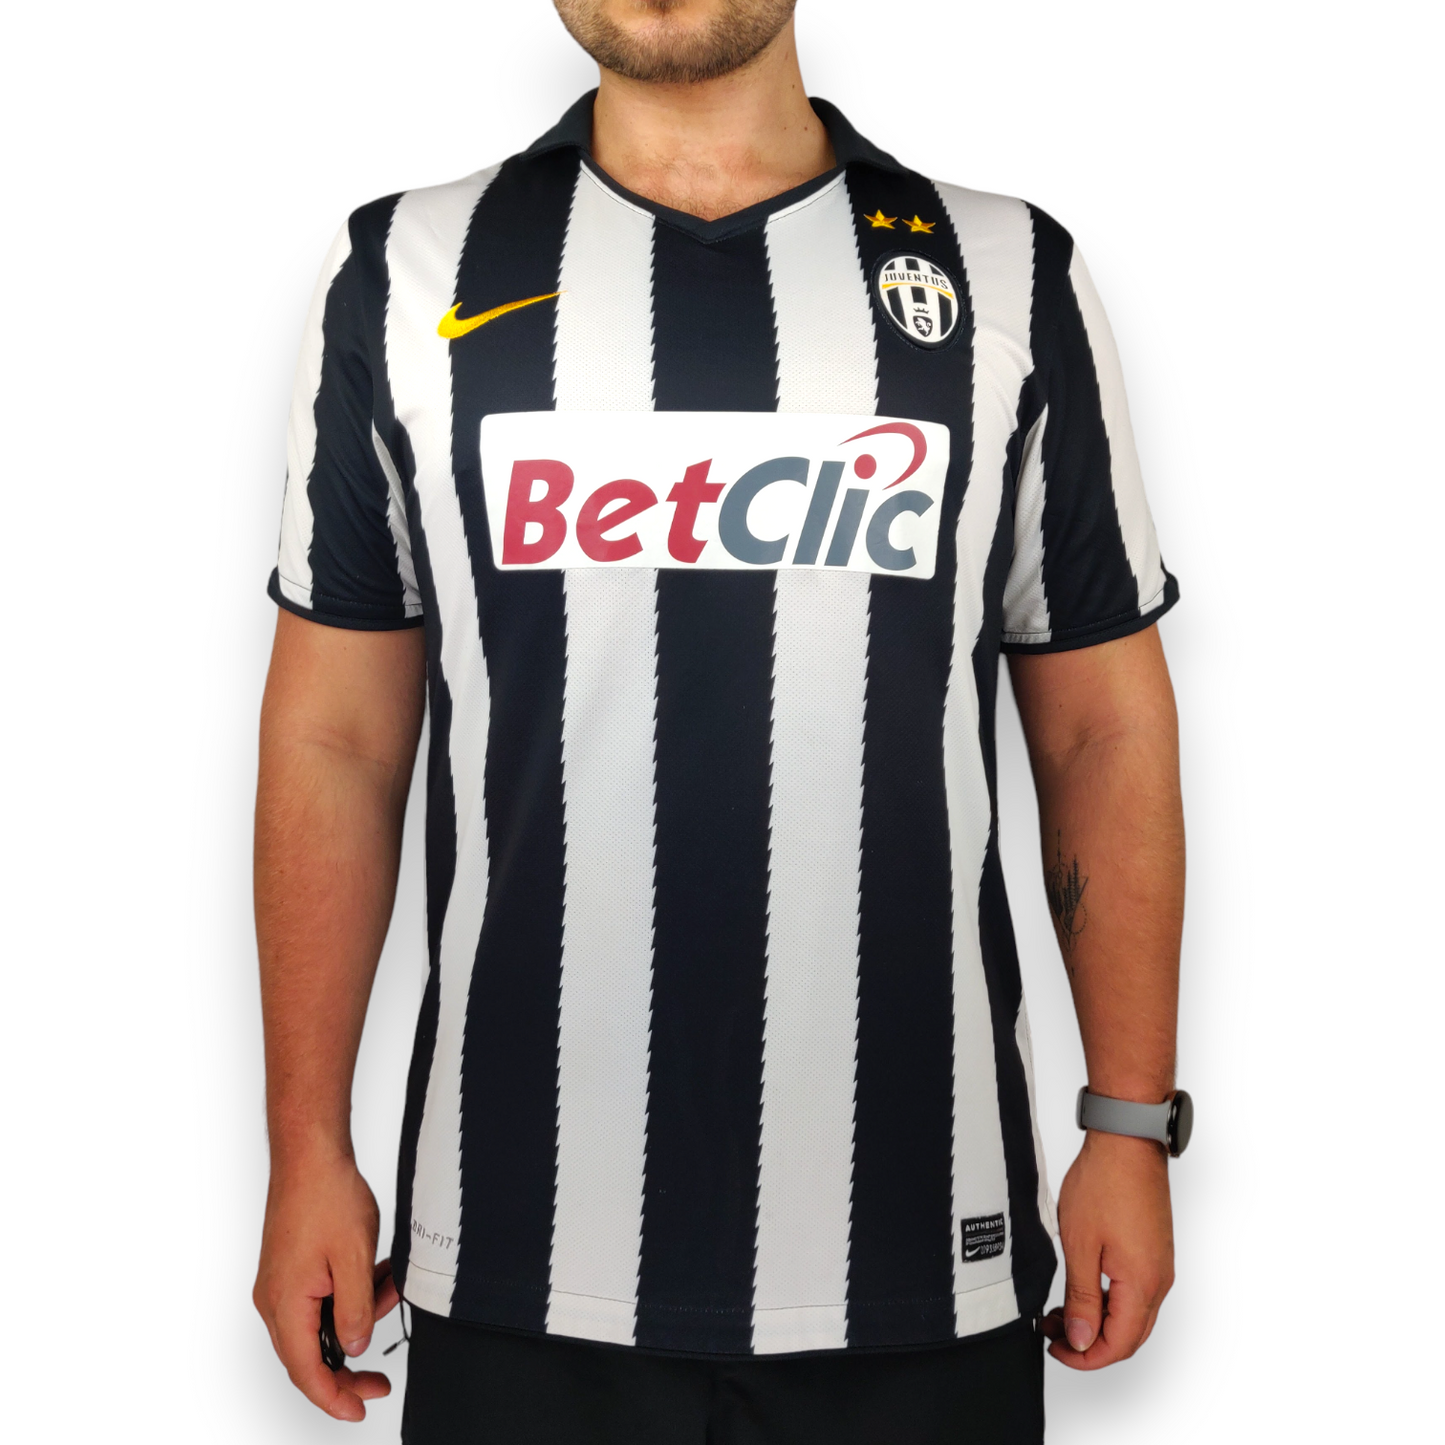 Juventus FC Nike 2010/2011 Home Football Shirt Jersey Men Size Large ~ 382260-010